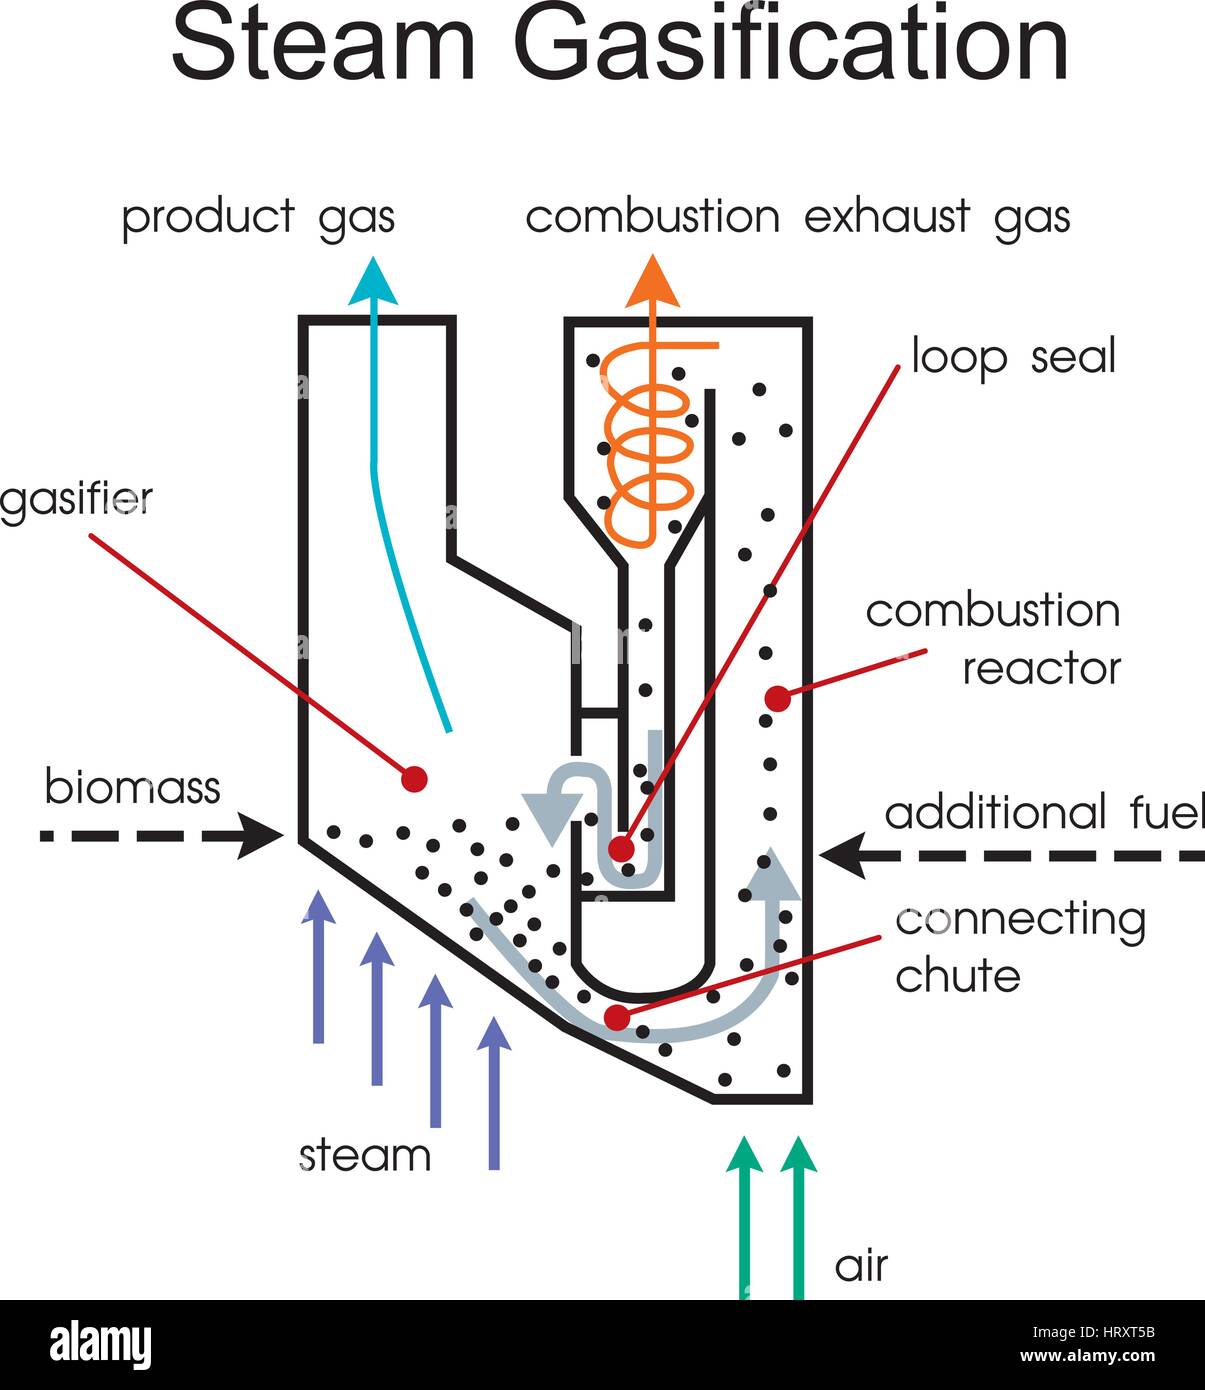 Holzgas ist ein Synthesegas-Kraftstoff, der als Brennstoff für Öfen, Herde und Fahrzeuge anstelle von Benzin, Diesel oder andere Brennstoffe verwendet werden kann. Während der Produktion Stock Vektor